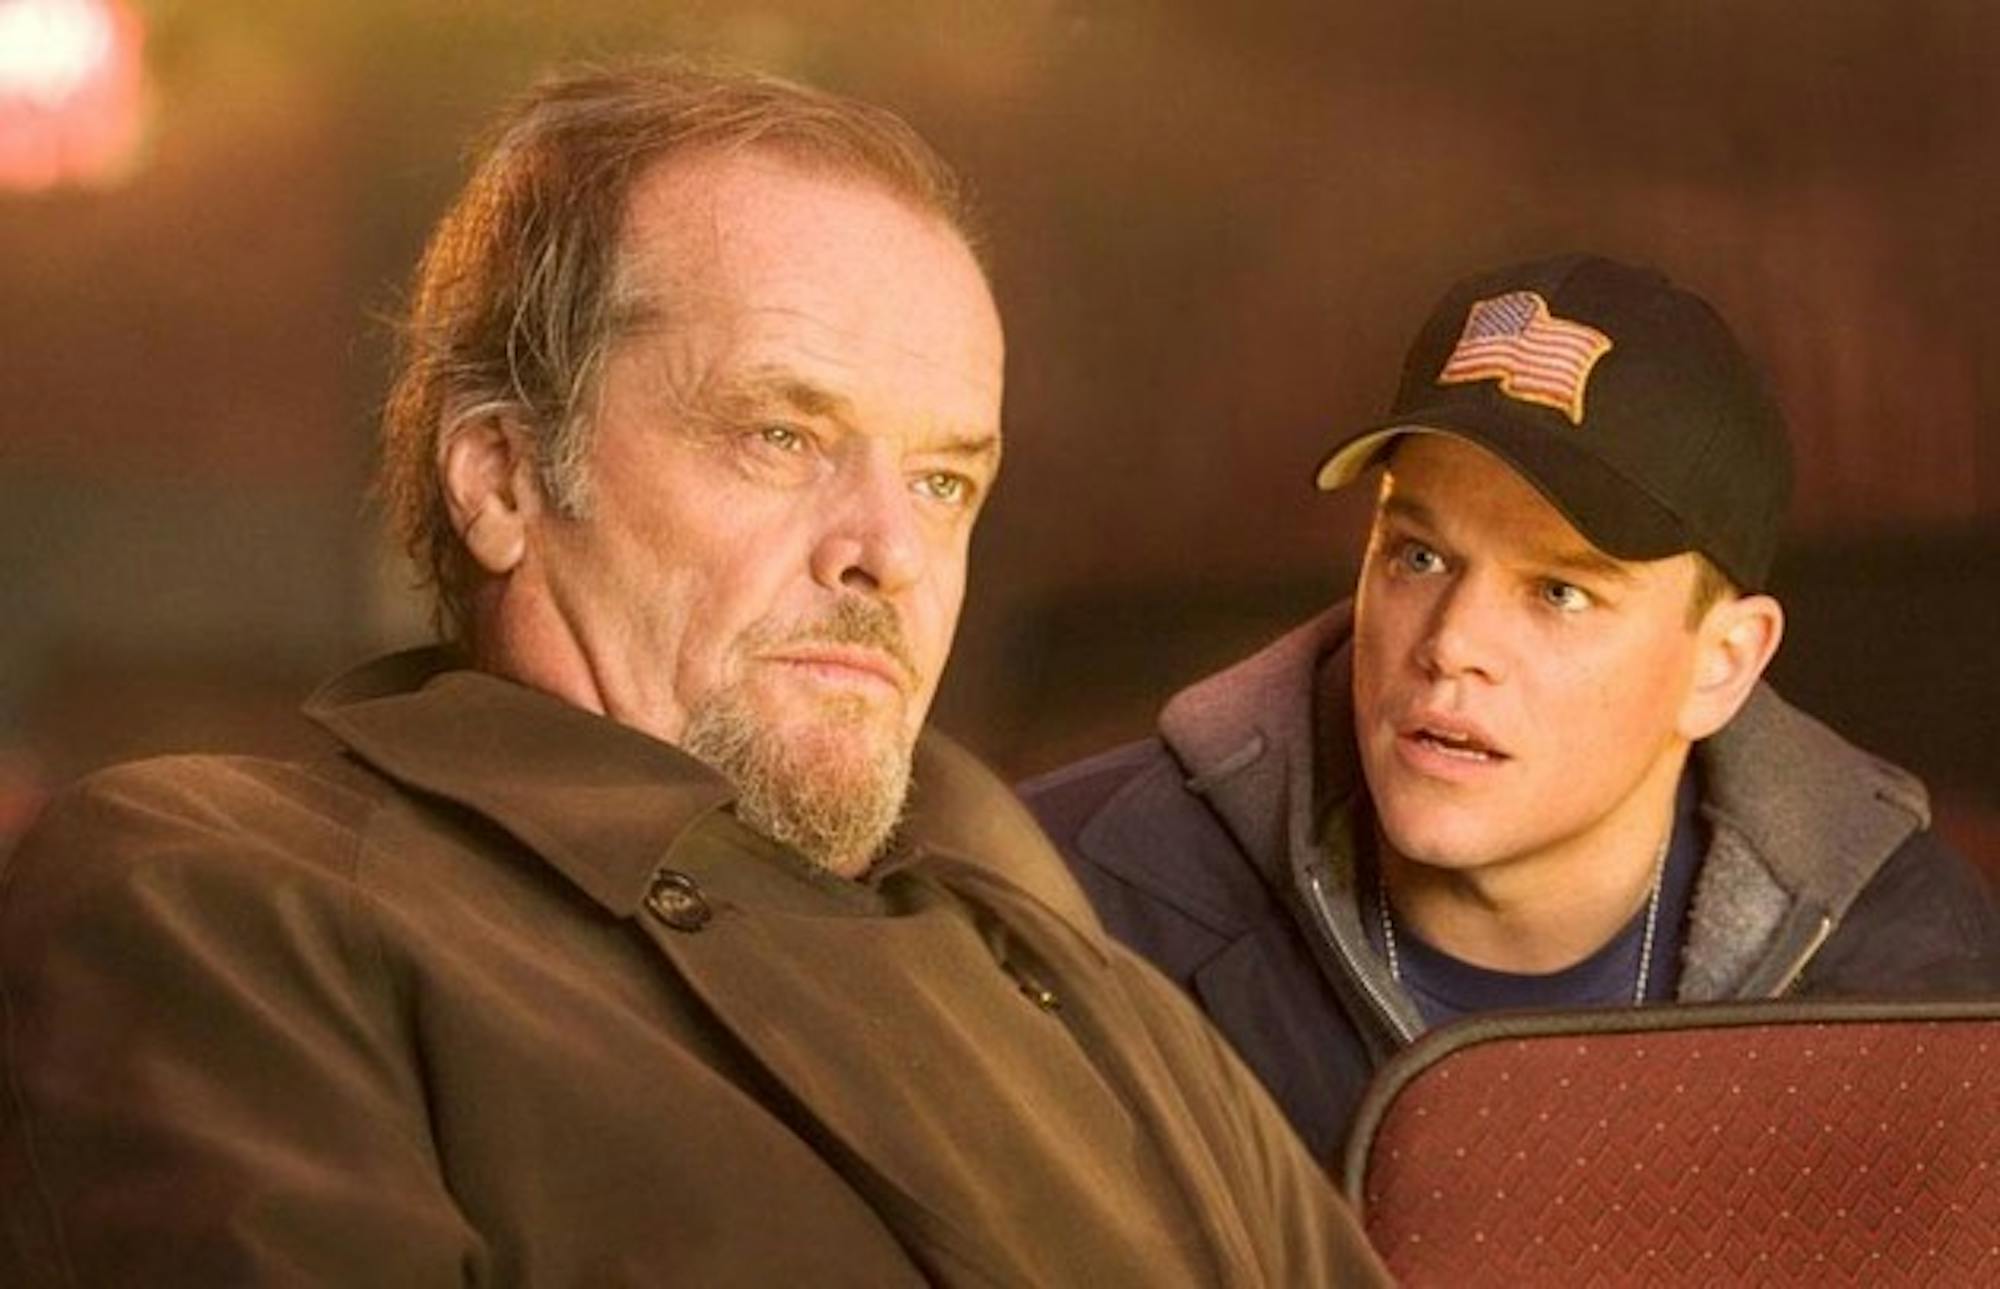 Jack Nicholson and Matt Damon star in Martin Scorsese's latest gritty urban crime drama, 